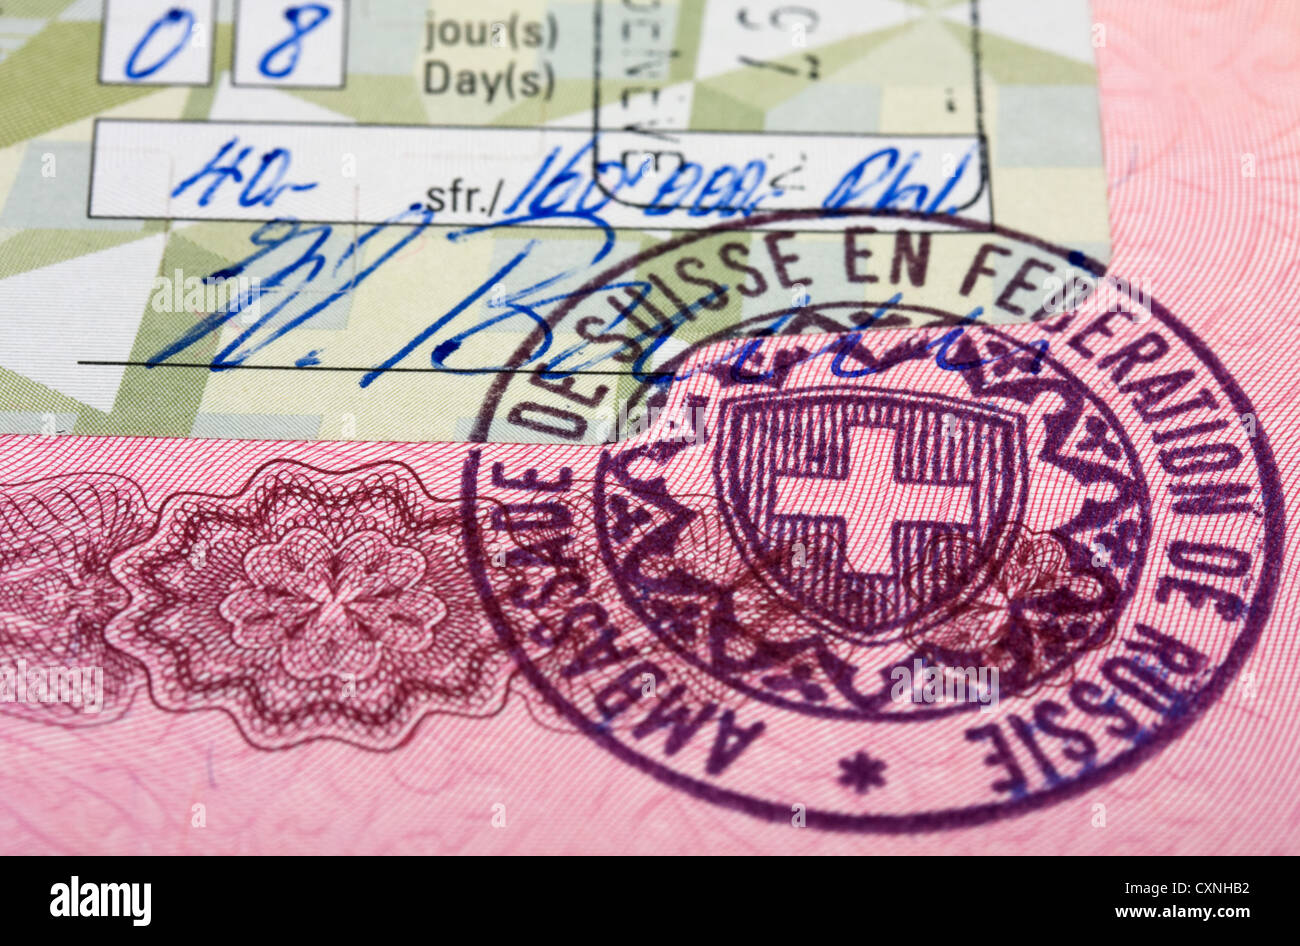 Visa stamp in swiss passport Stock Photo - Alamy